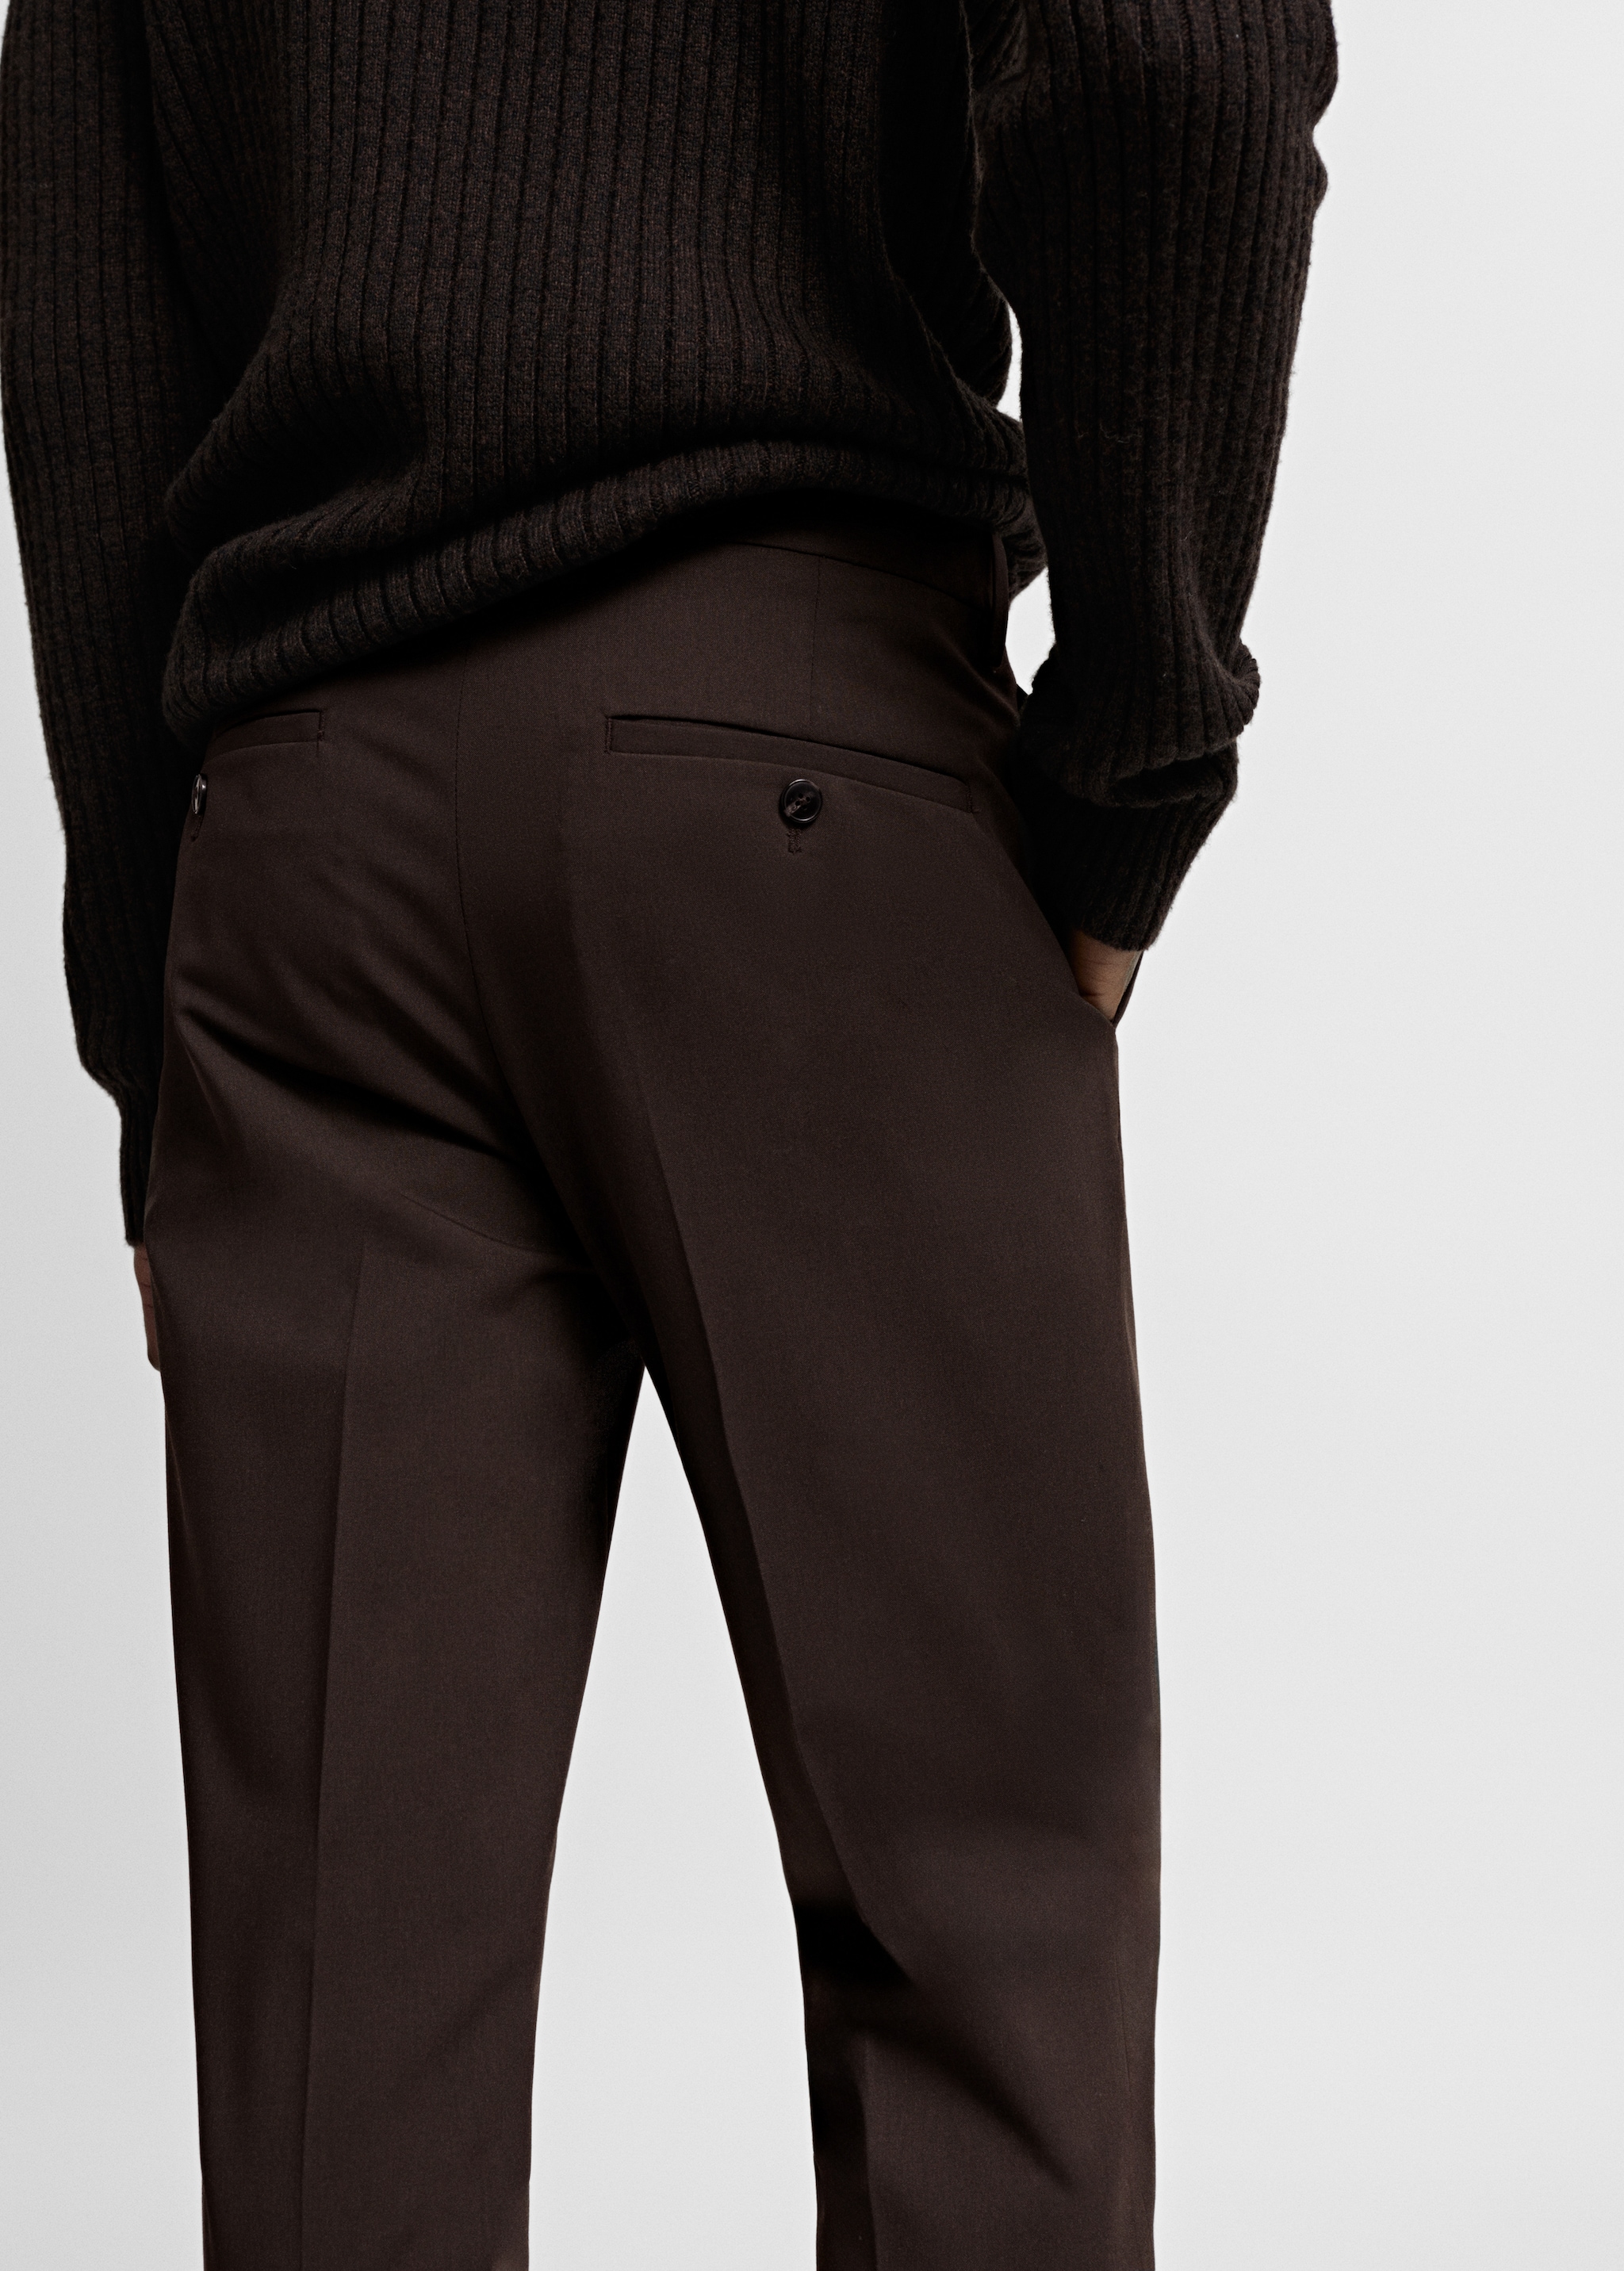 Pantalón traje super slim fit tejido strech - Detalle del artículo 4